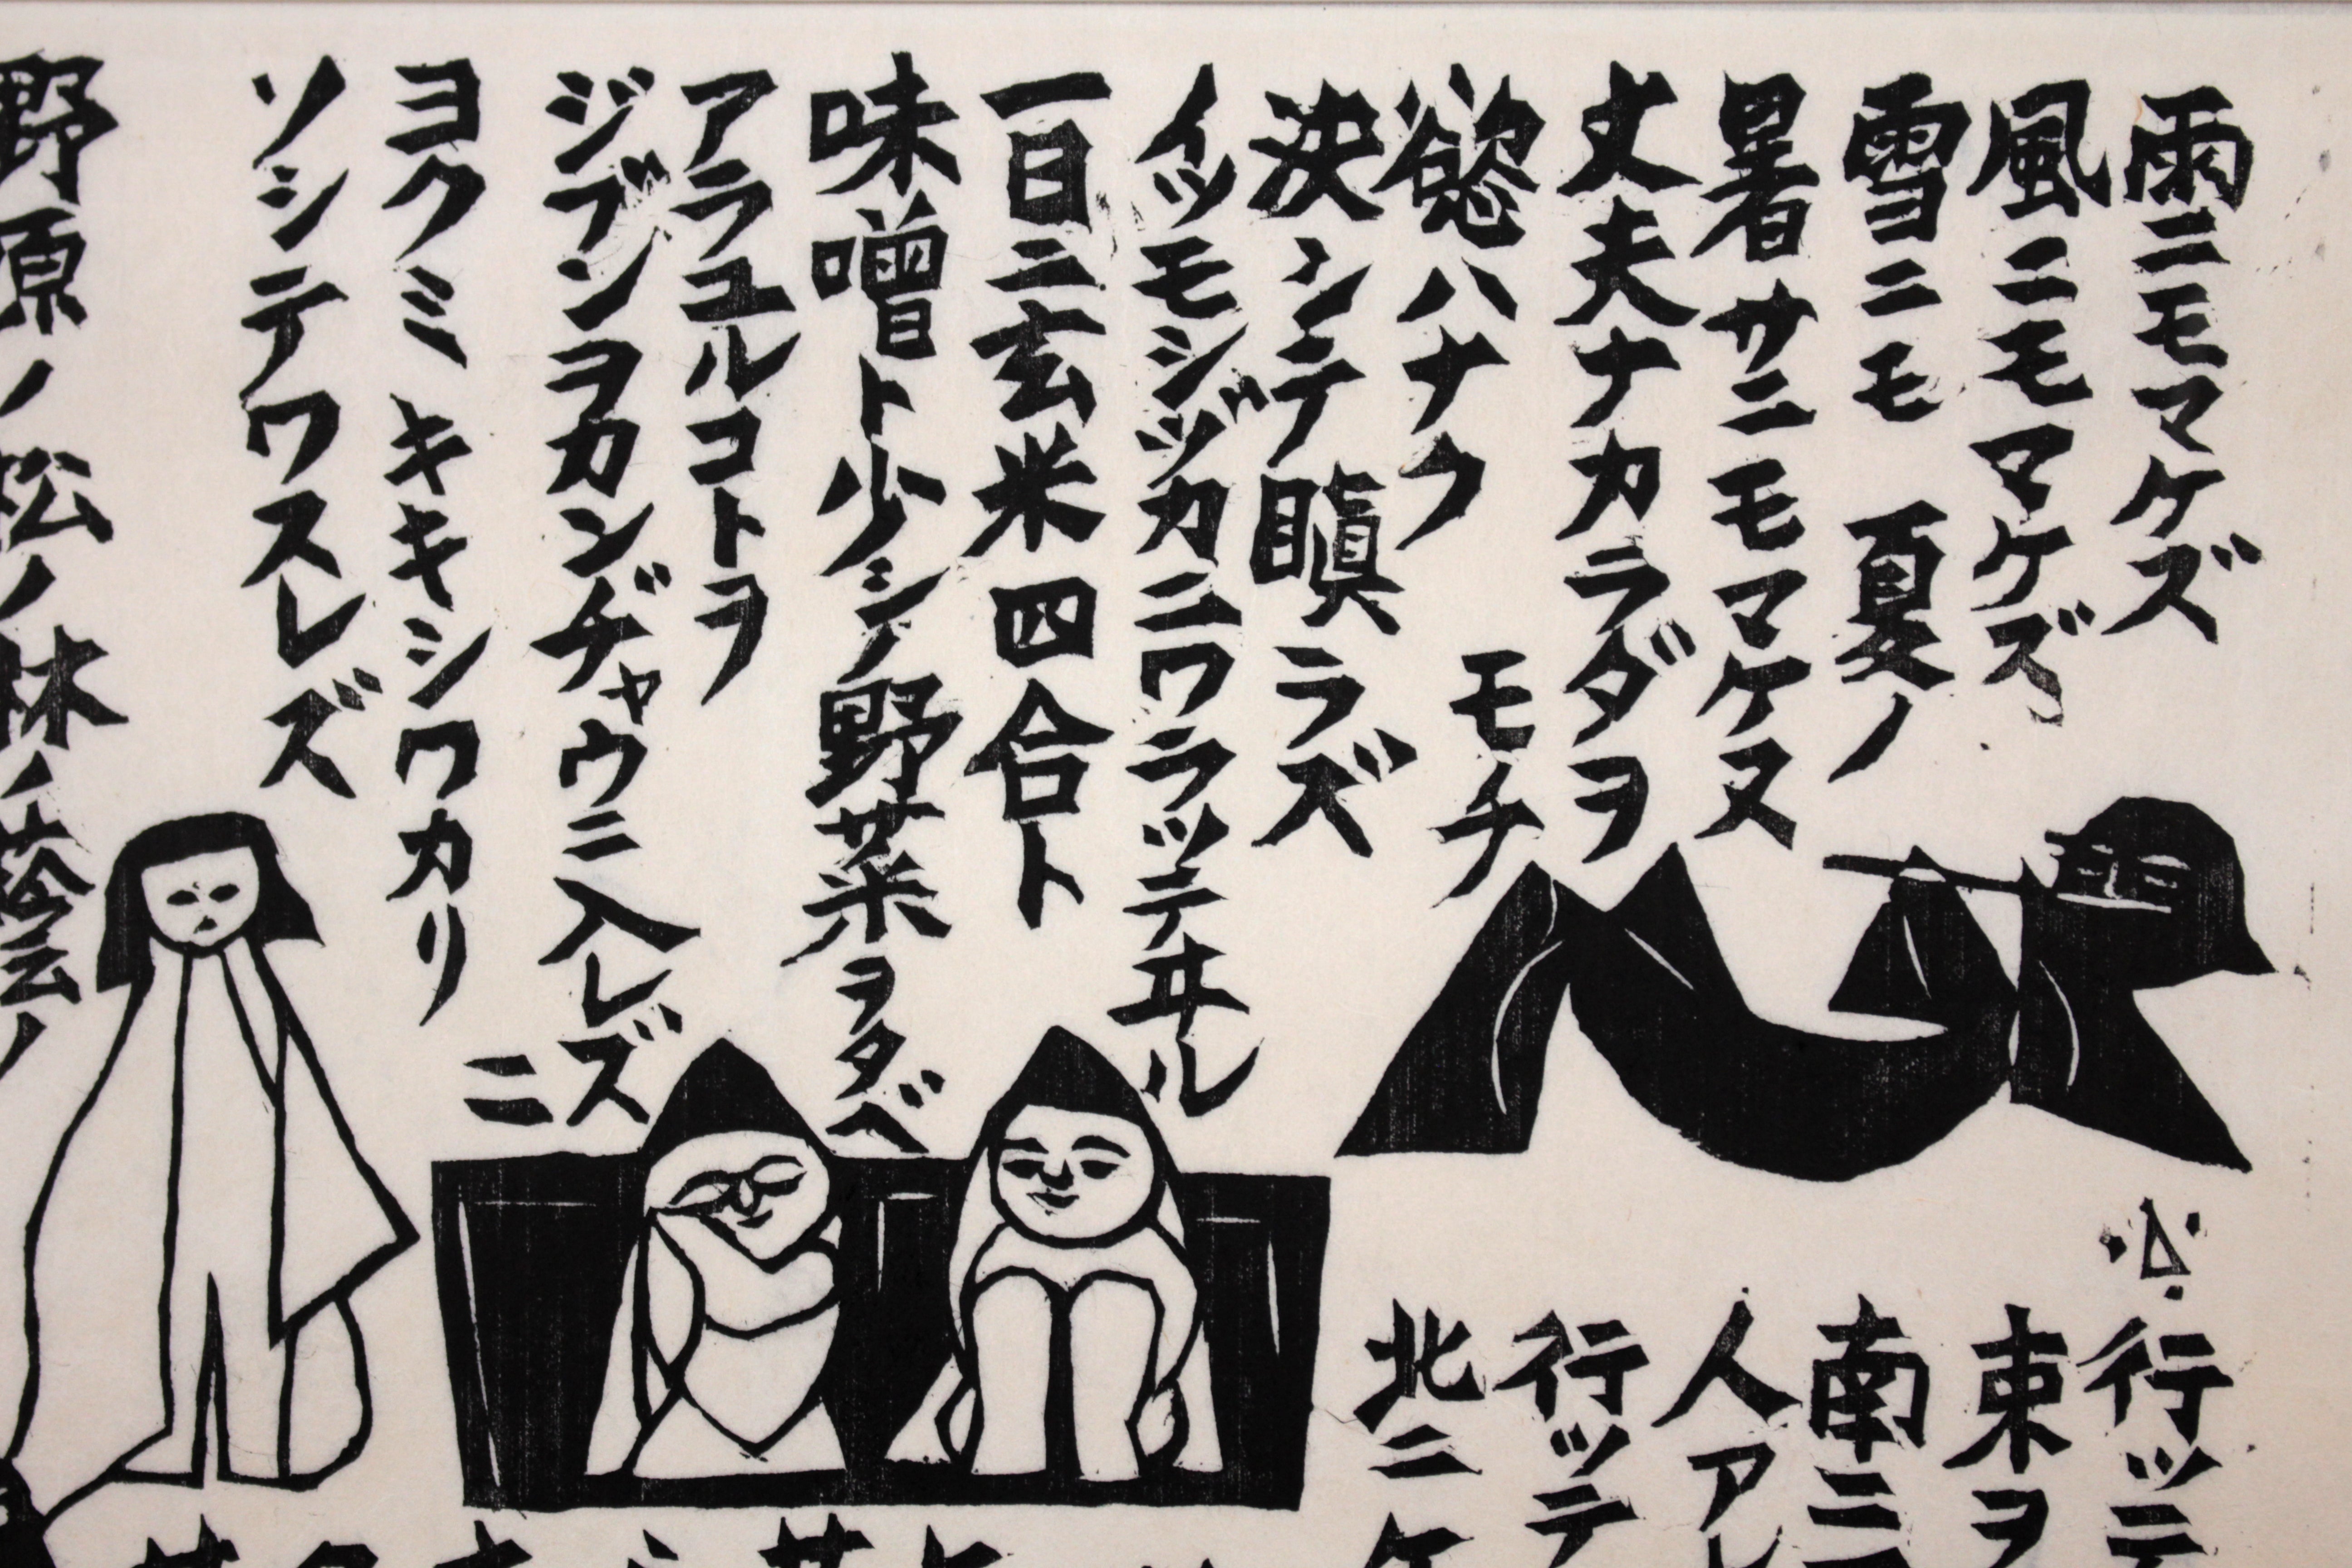 長谷川富三郎 『雨ニモマケズ』 木版画 - 北海道画廊